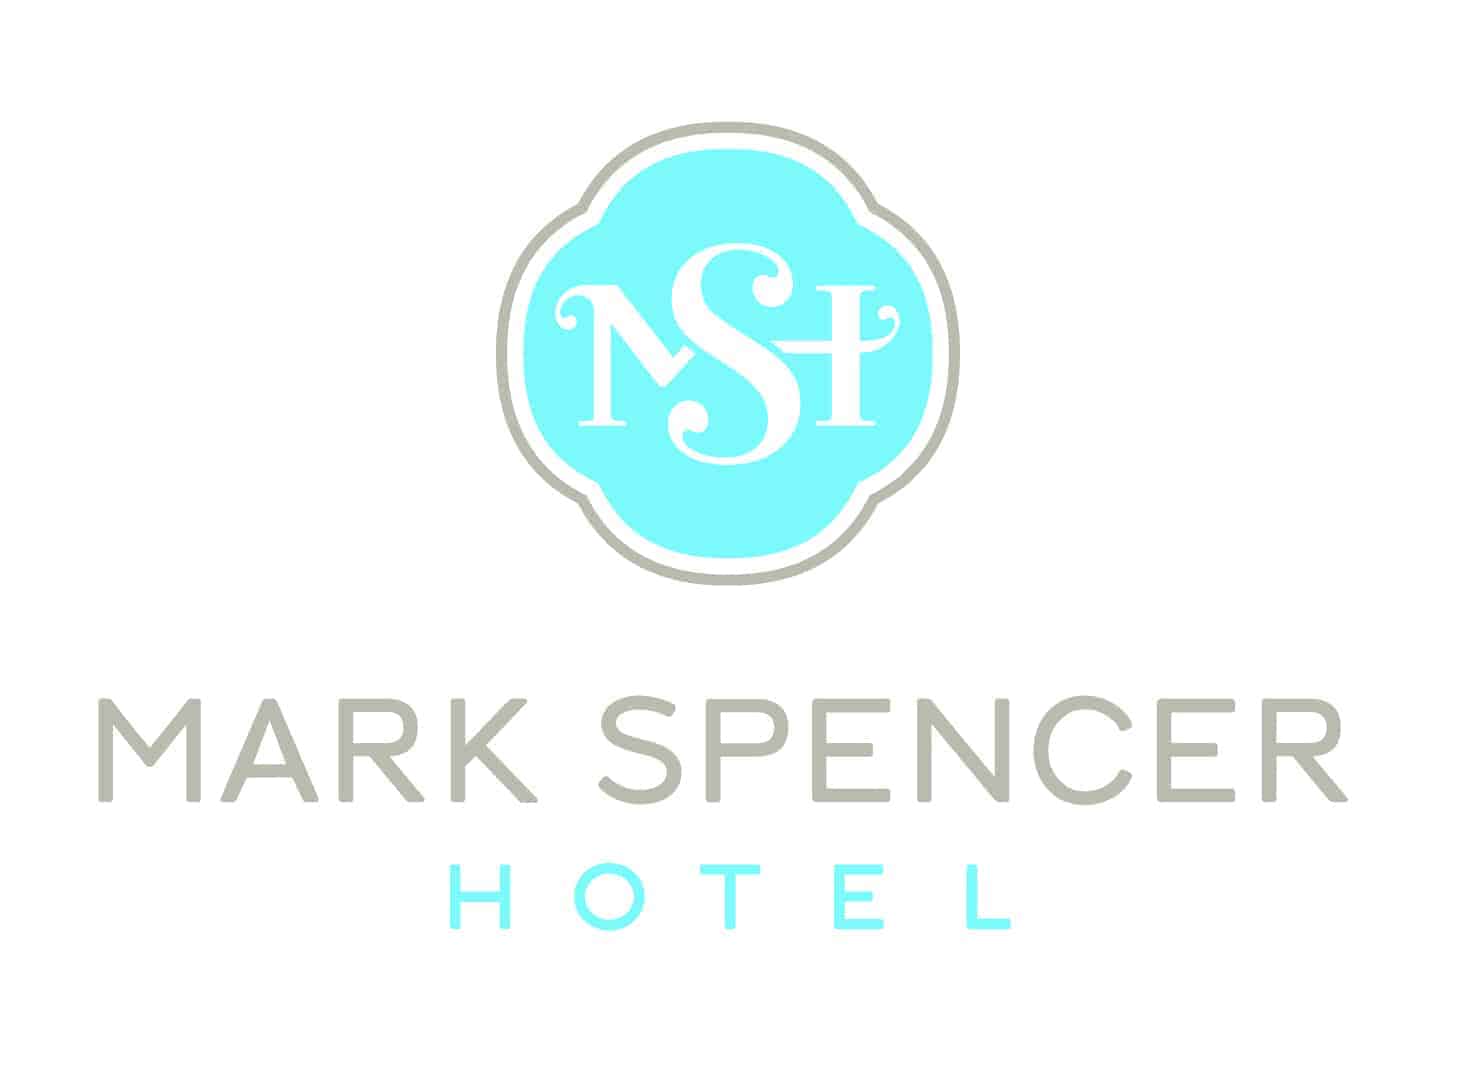 Mark Spencer Hotel Logo